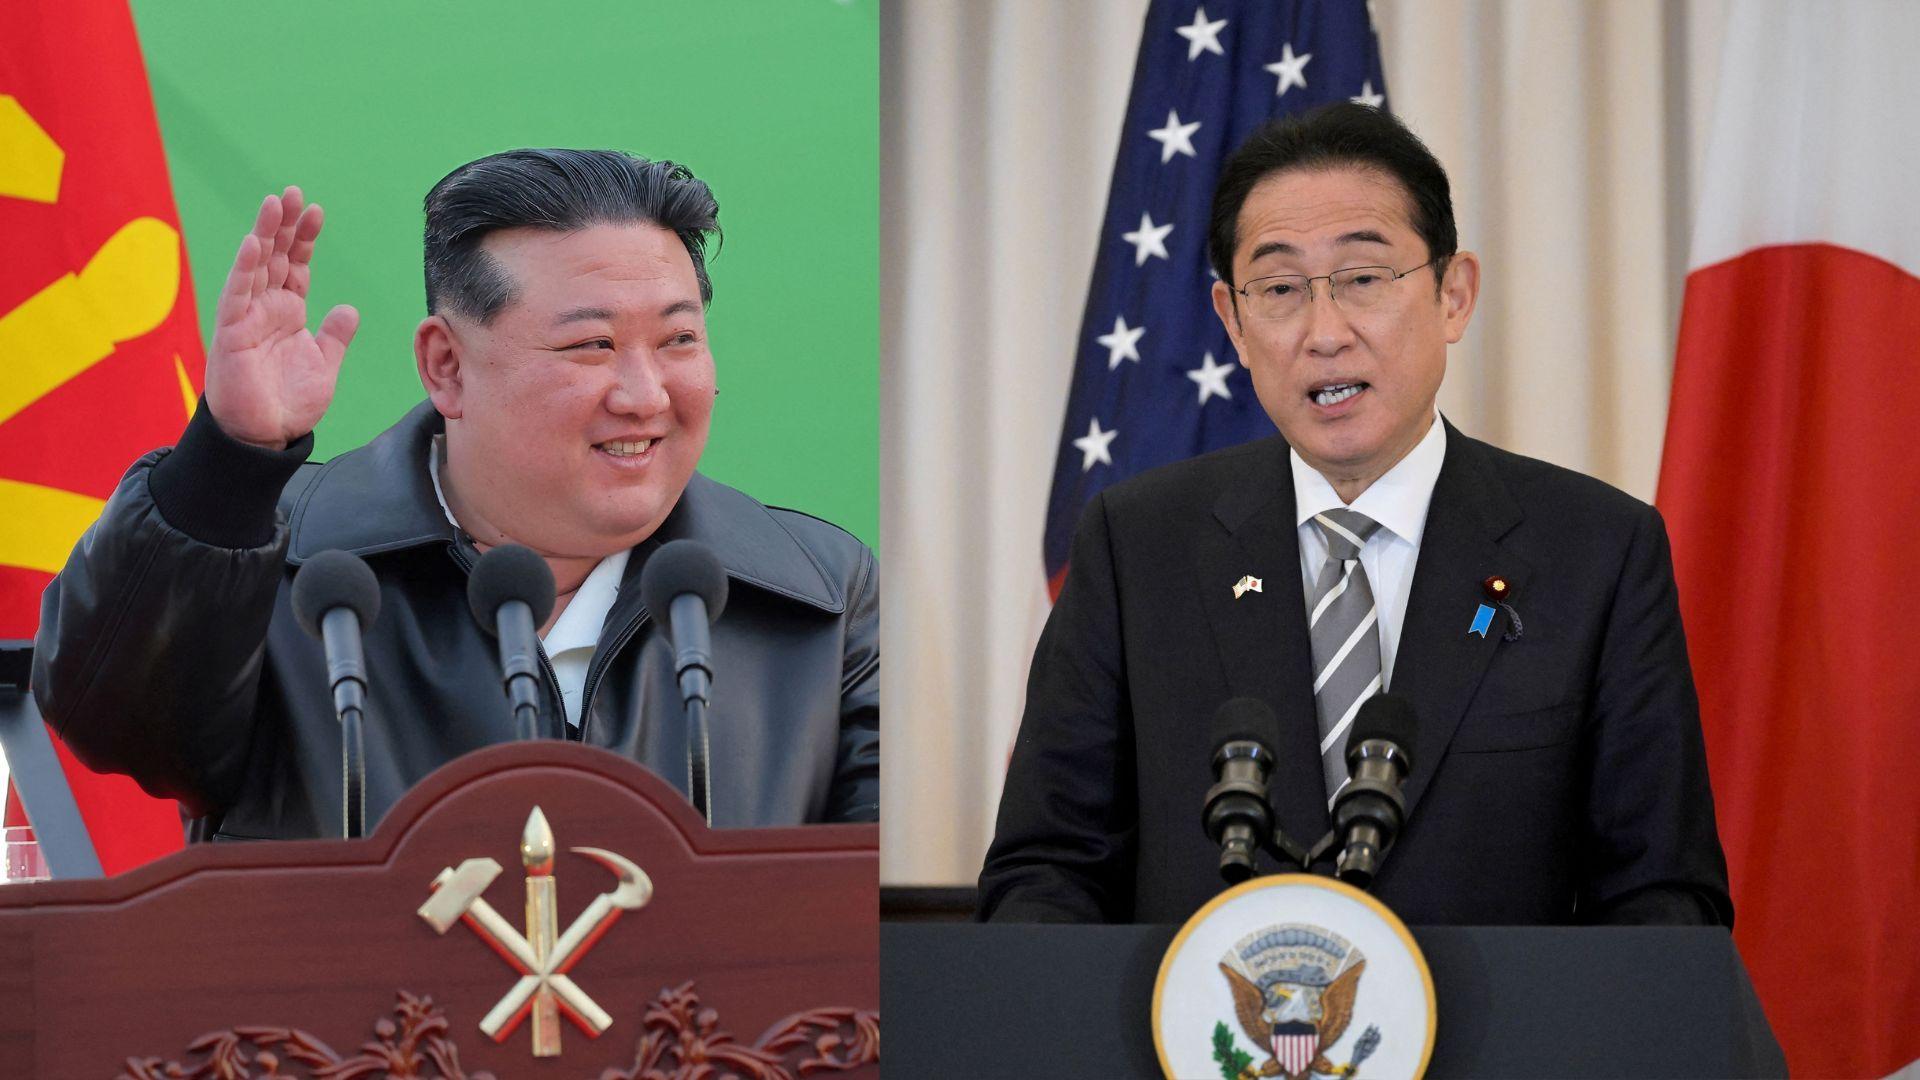 기시다 후미오 일본 총리는 최근 북한 김정은 국무위원장과의 정상회담을 위해 고위급 접근을 하고 있다고 밝혔다.